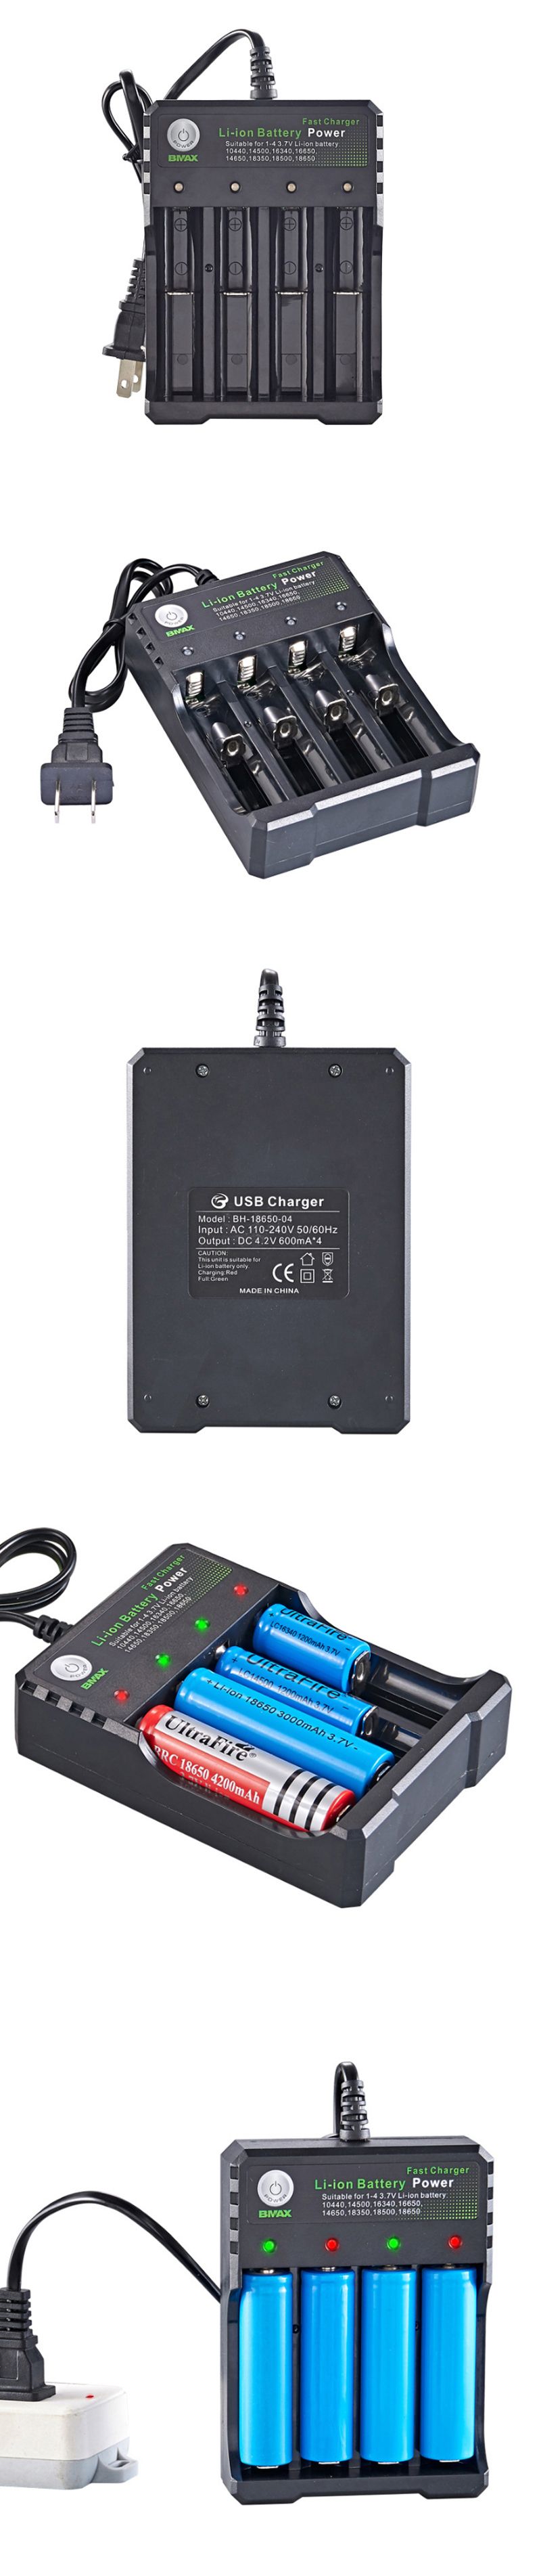 BMAX-4-Slot-18650145001665016340-Li-ion-Battery-Charger-EU-Plug-AC-Plug-Portable-Charger-1647136